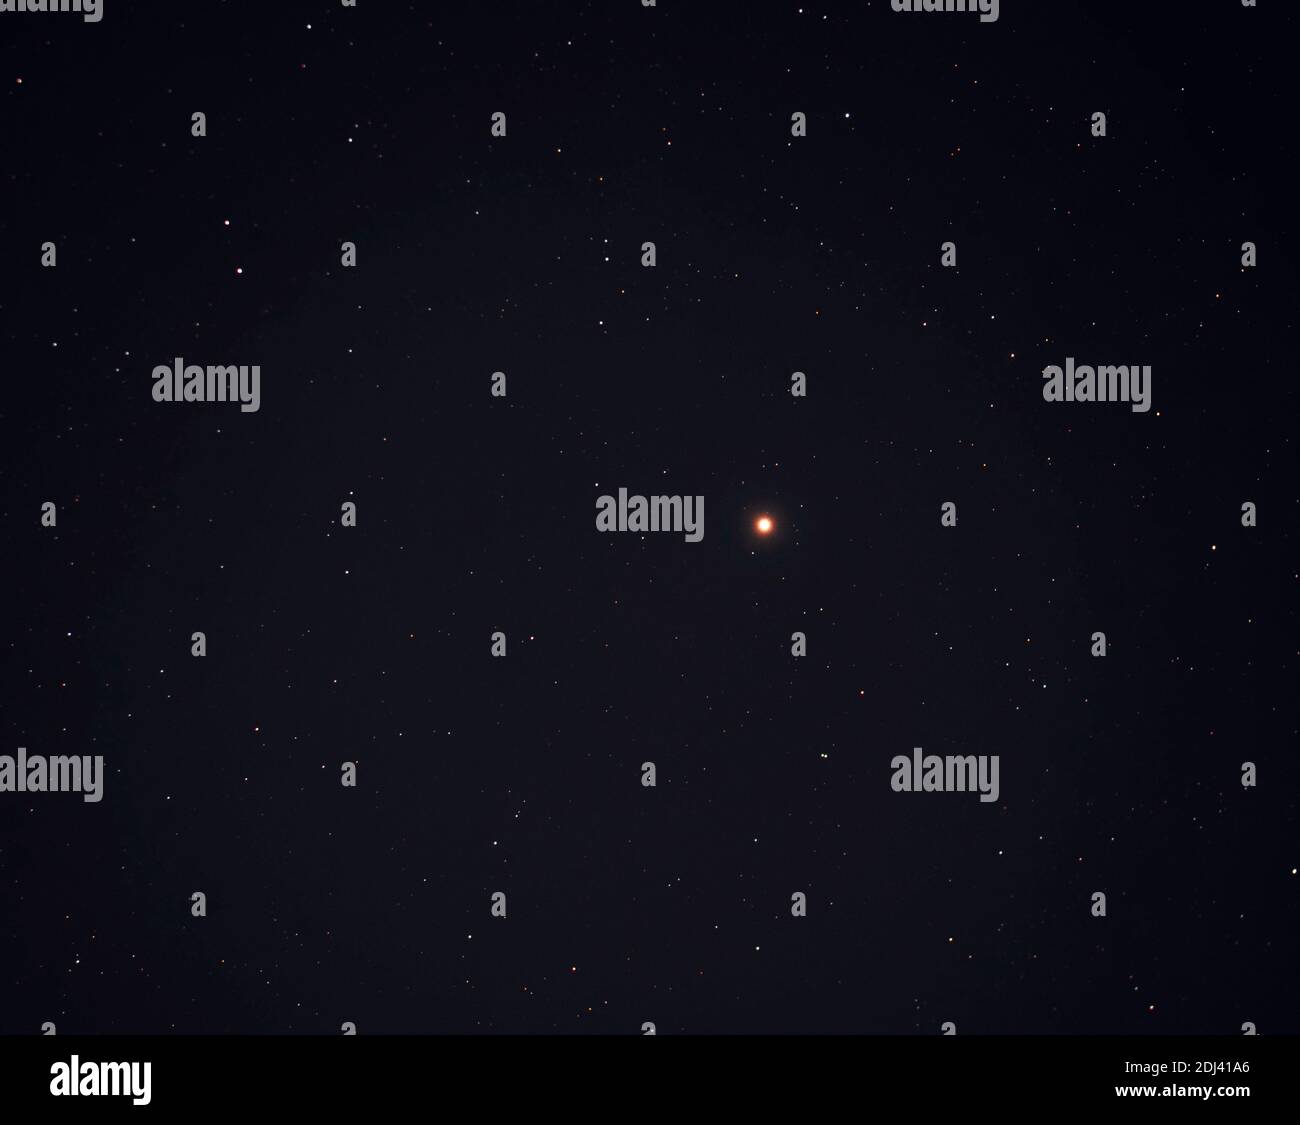 Roter Superriesen-Stern Betelgeuse im Sternbild Orion, zehnthellster Stern am Nachthimmel, 500 Lichtjahre vom Planeten Erde, aufgenommen am klaren Nachthimmel aus London UK am 12.12.2020 mit Nikon Z7 am Teleskop. Stockfoto